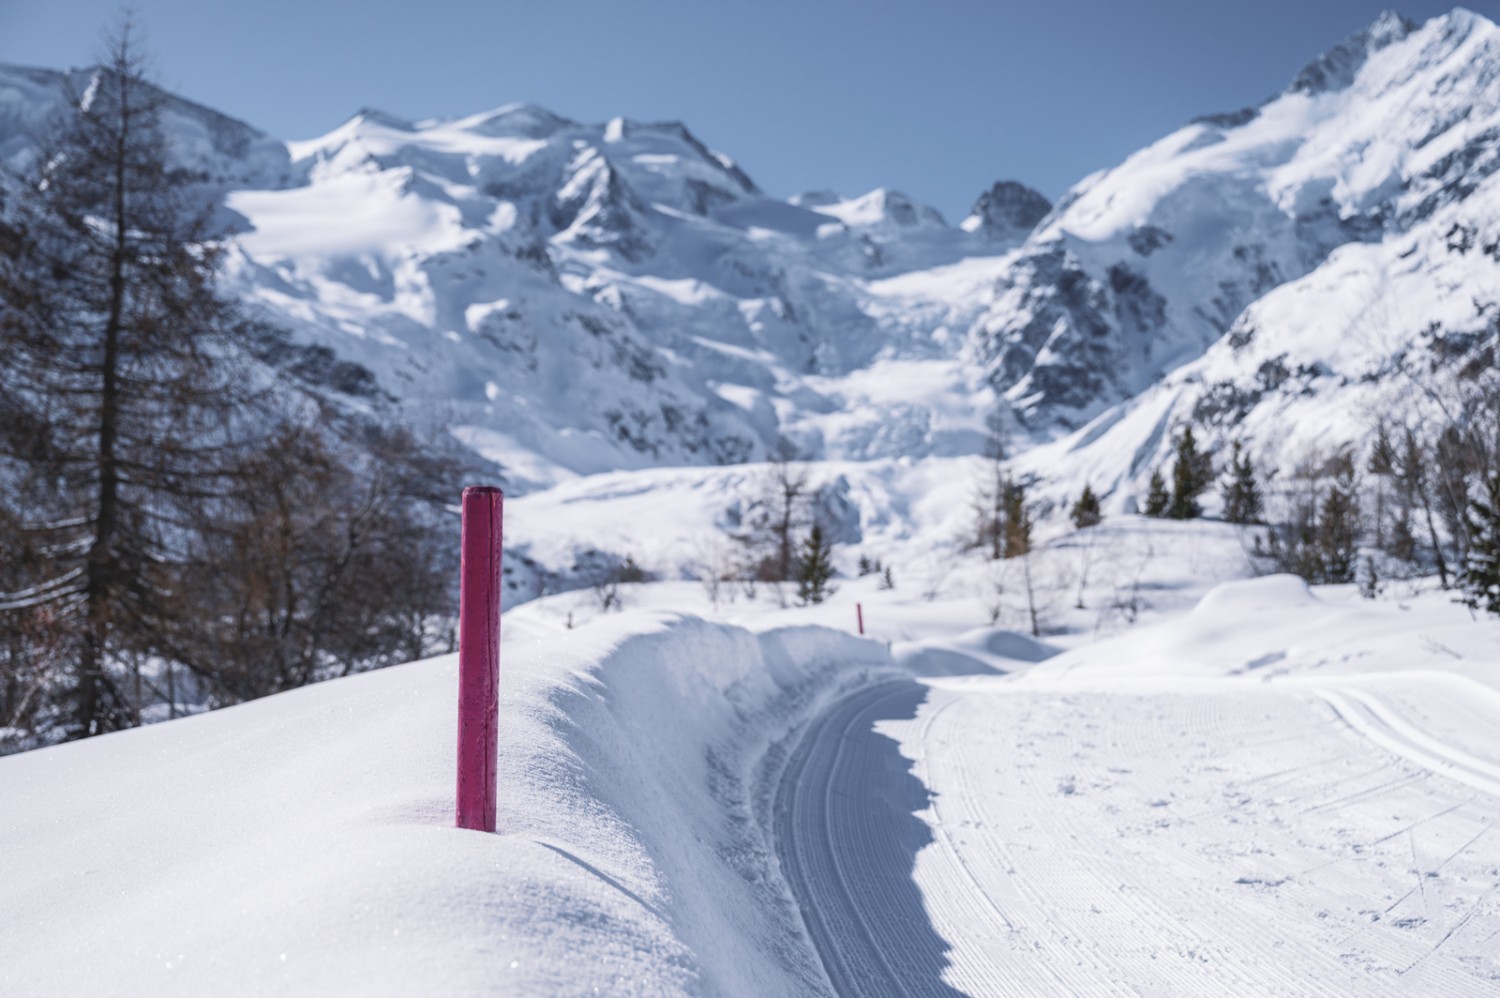 Die ganze Wanderung befindet sich auf dem präparierten Winterwanderweg, signalisiert mit pinken Pfählen. Bild: Jon Guler